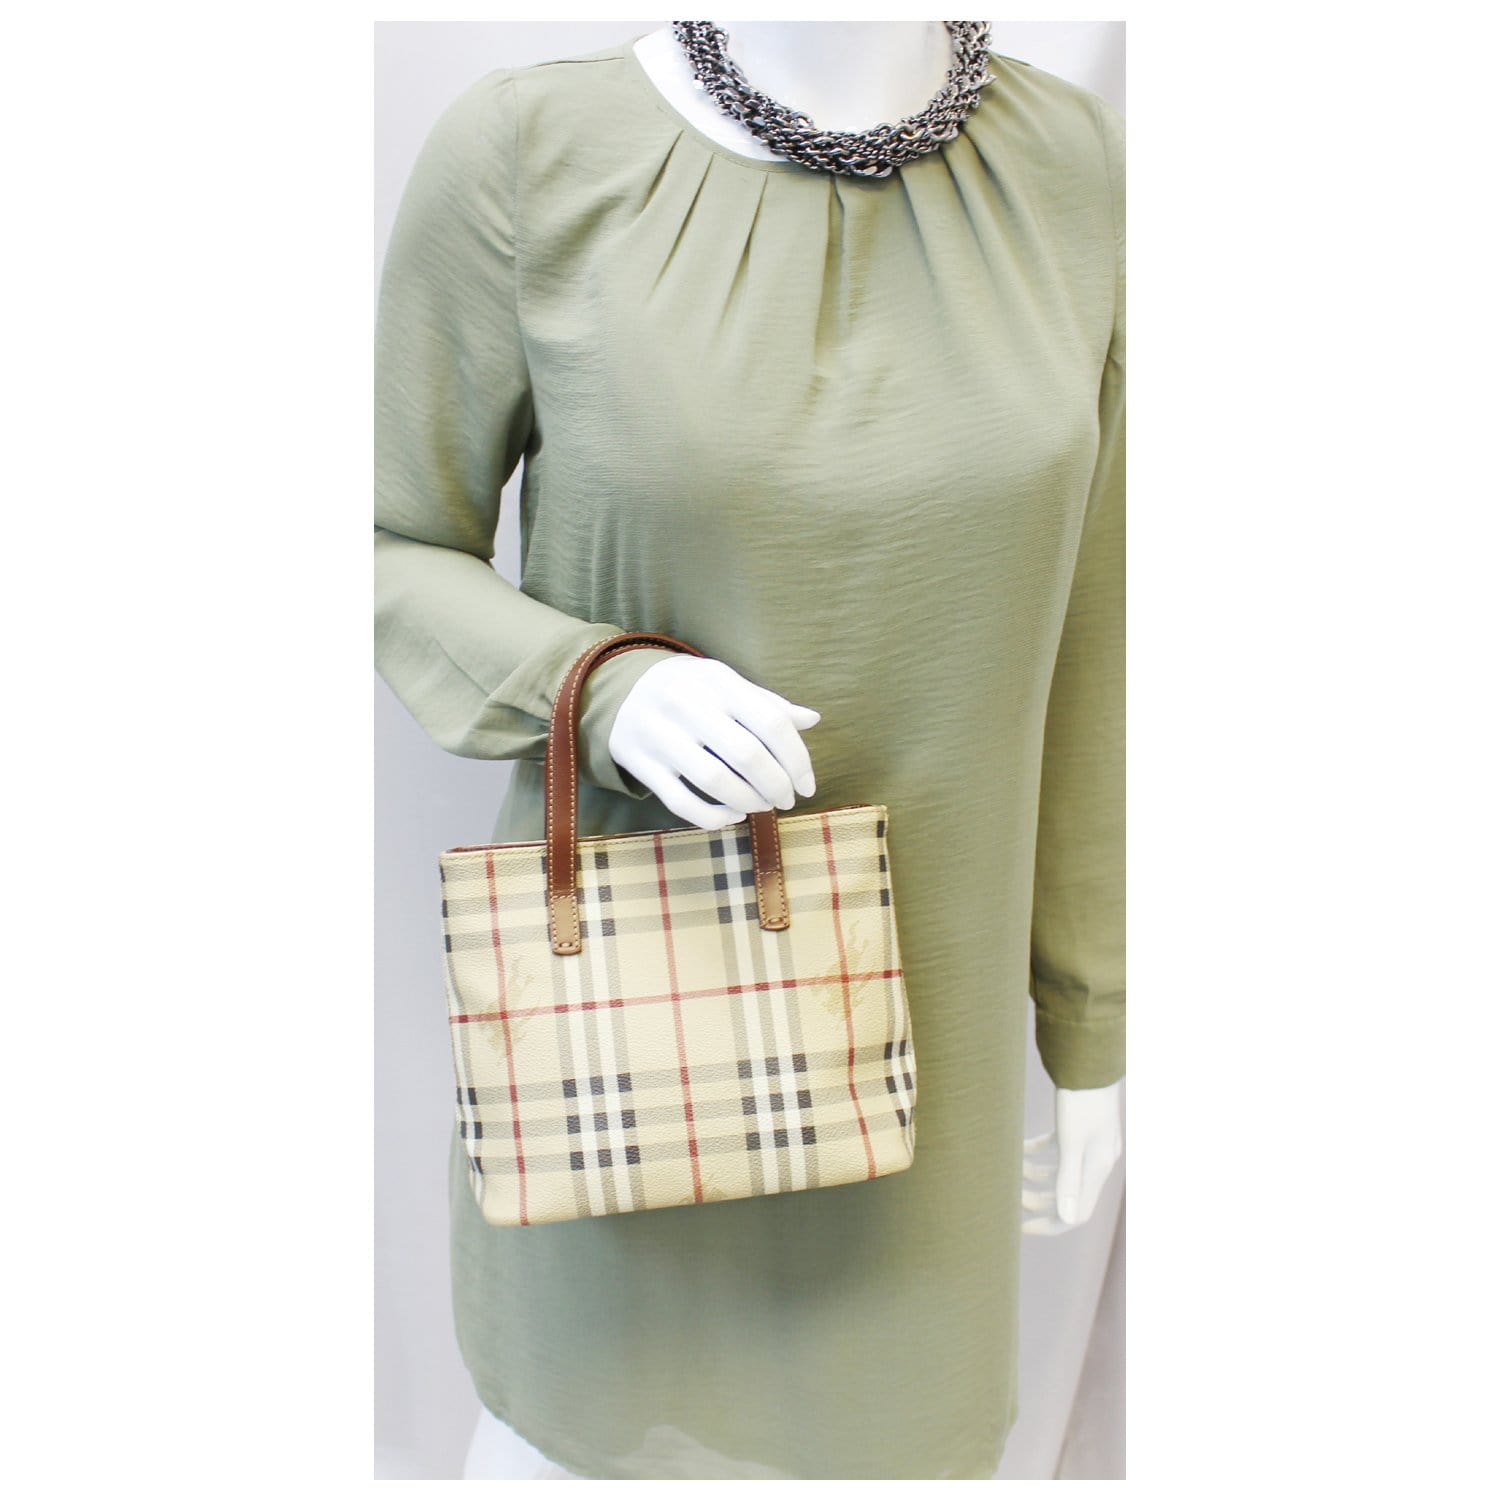 Burberry Nova Check Plaid Tote Bag Handbag Purse Designer Authentic –